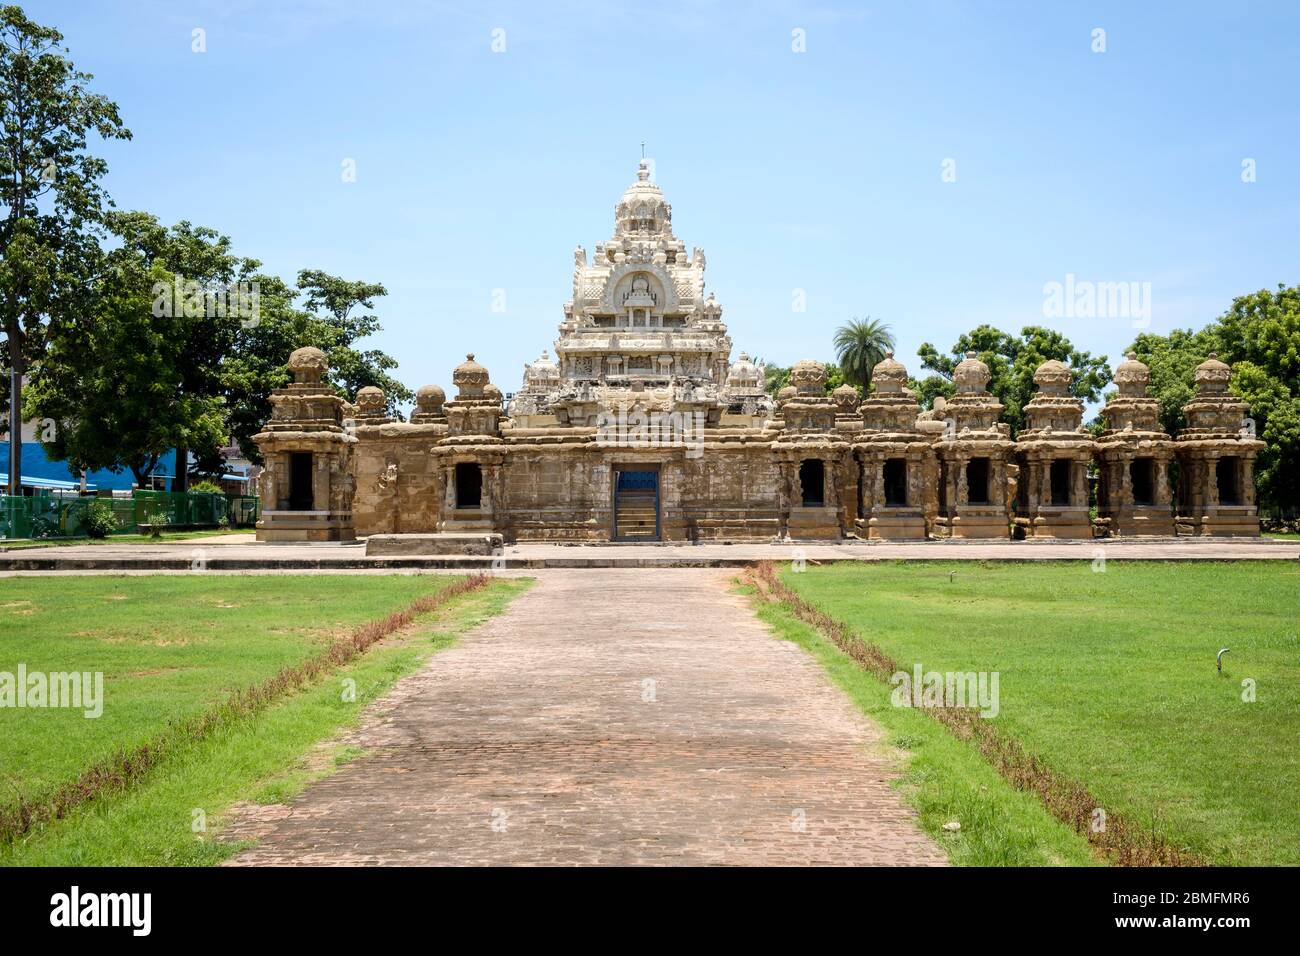 Vista esterna del Kailasanathar del VII-VIII secolo, un tempio indù in stile Pallava (Dravidiano), la struttura più antica di Kanchipuram, Tamil Nadu, India. Foto Stock